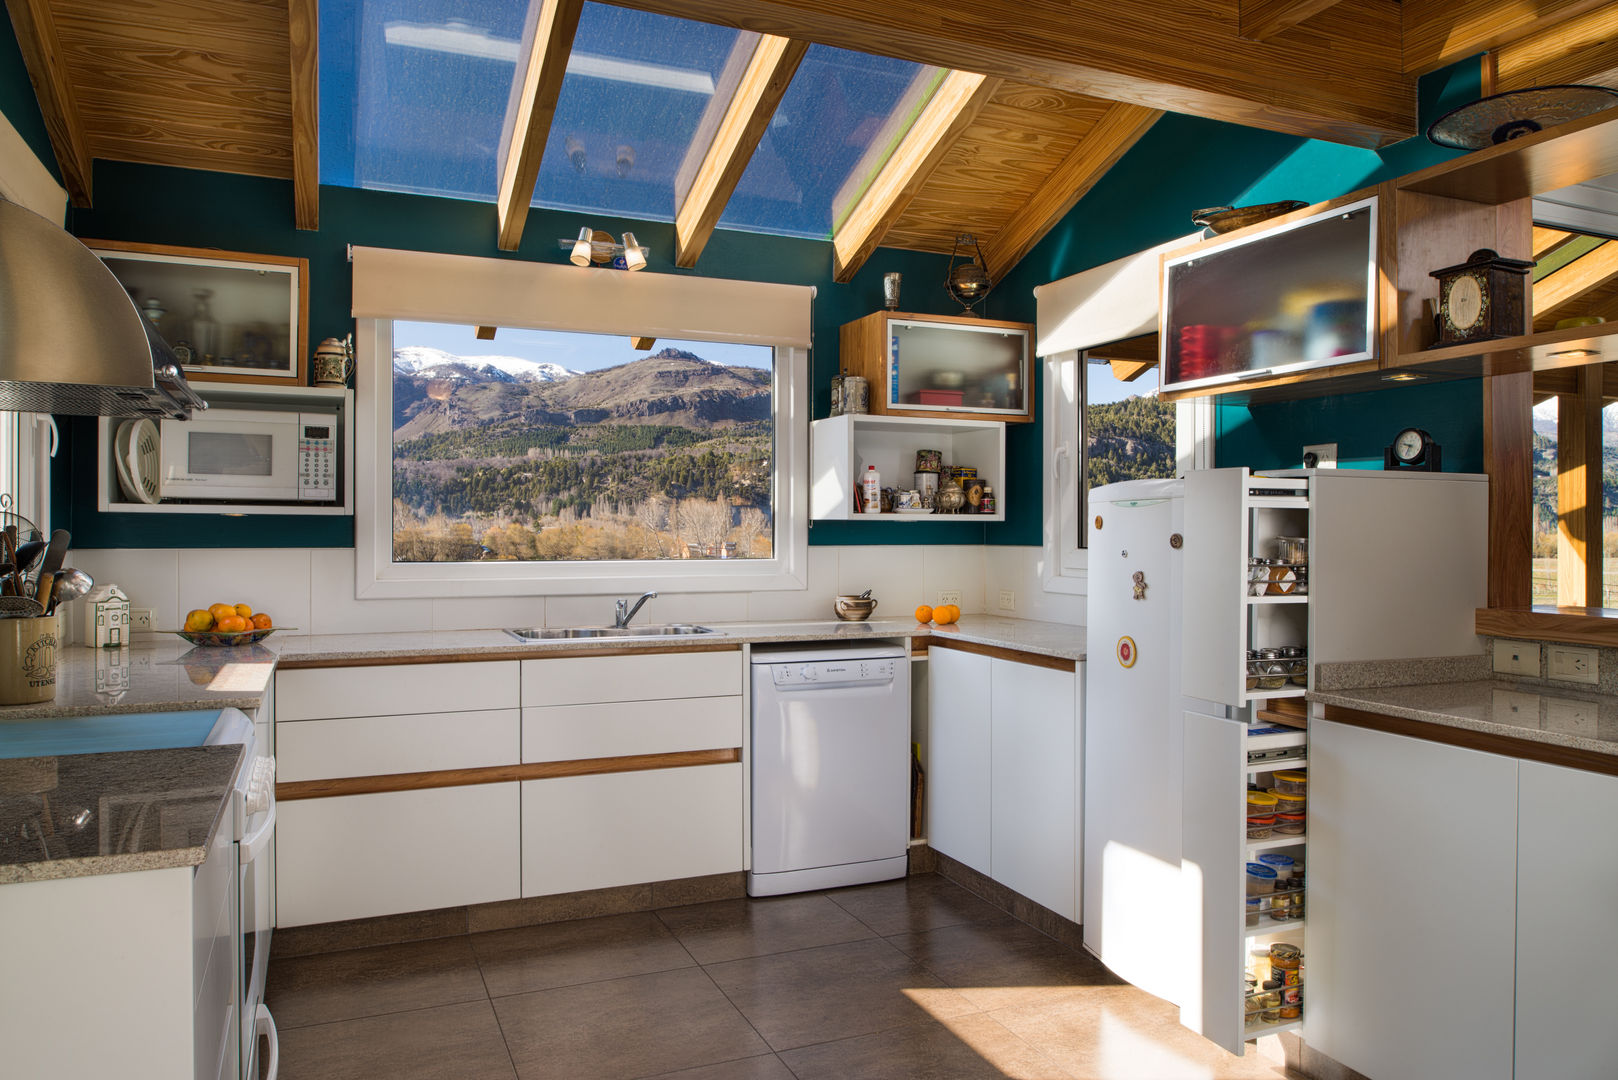 Casa de madera en San Martin de los Andes, Patagonia Log Homes - Arquitectos - Neuquén Patagonia Log Homes - Arquitectos - Neuquén Cuisine intégrée Bois Effet bois